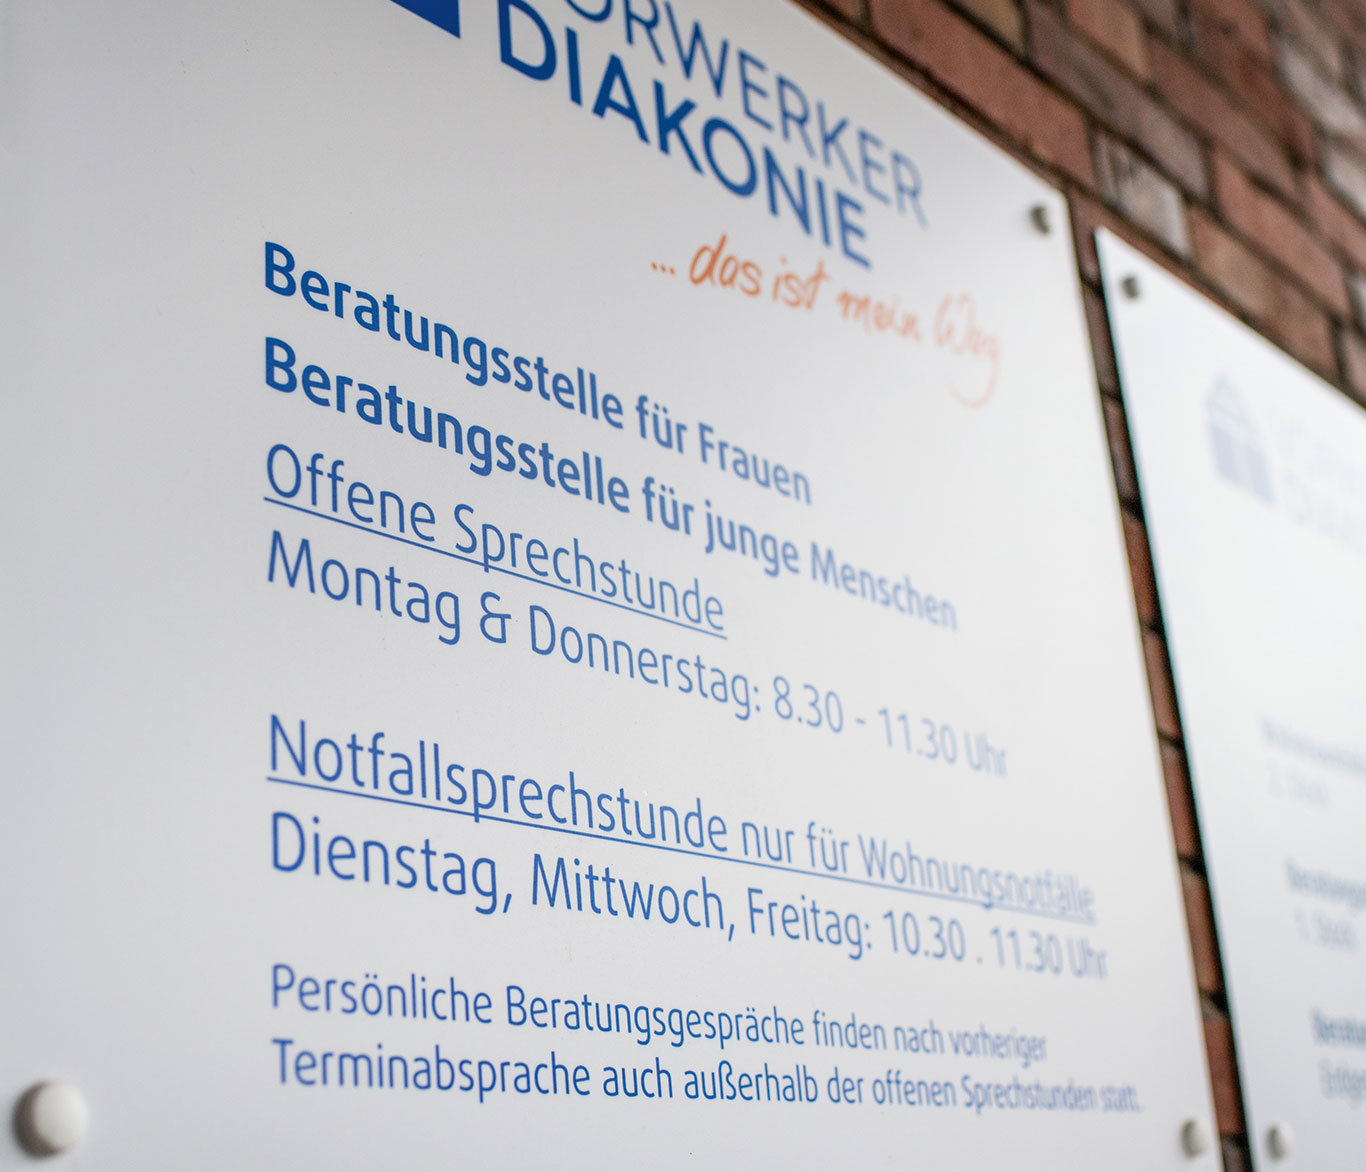 Schilder am Eingang der Beratungsstellen der Vorwerker Diakonie in Lübeck.